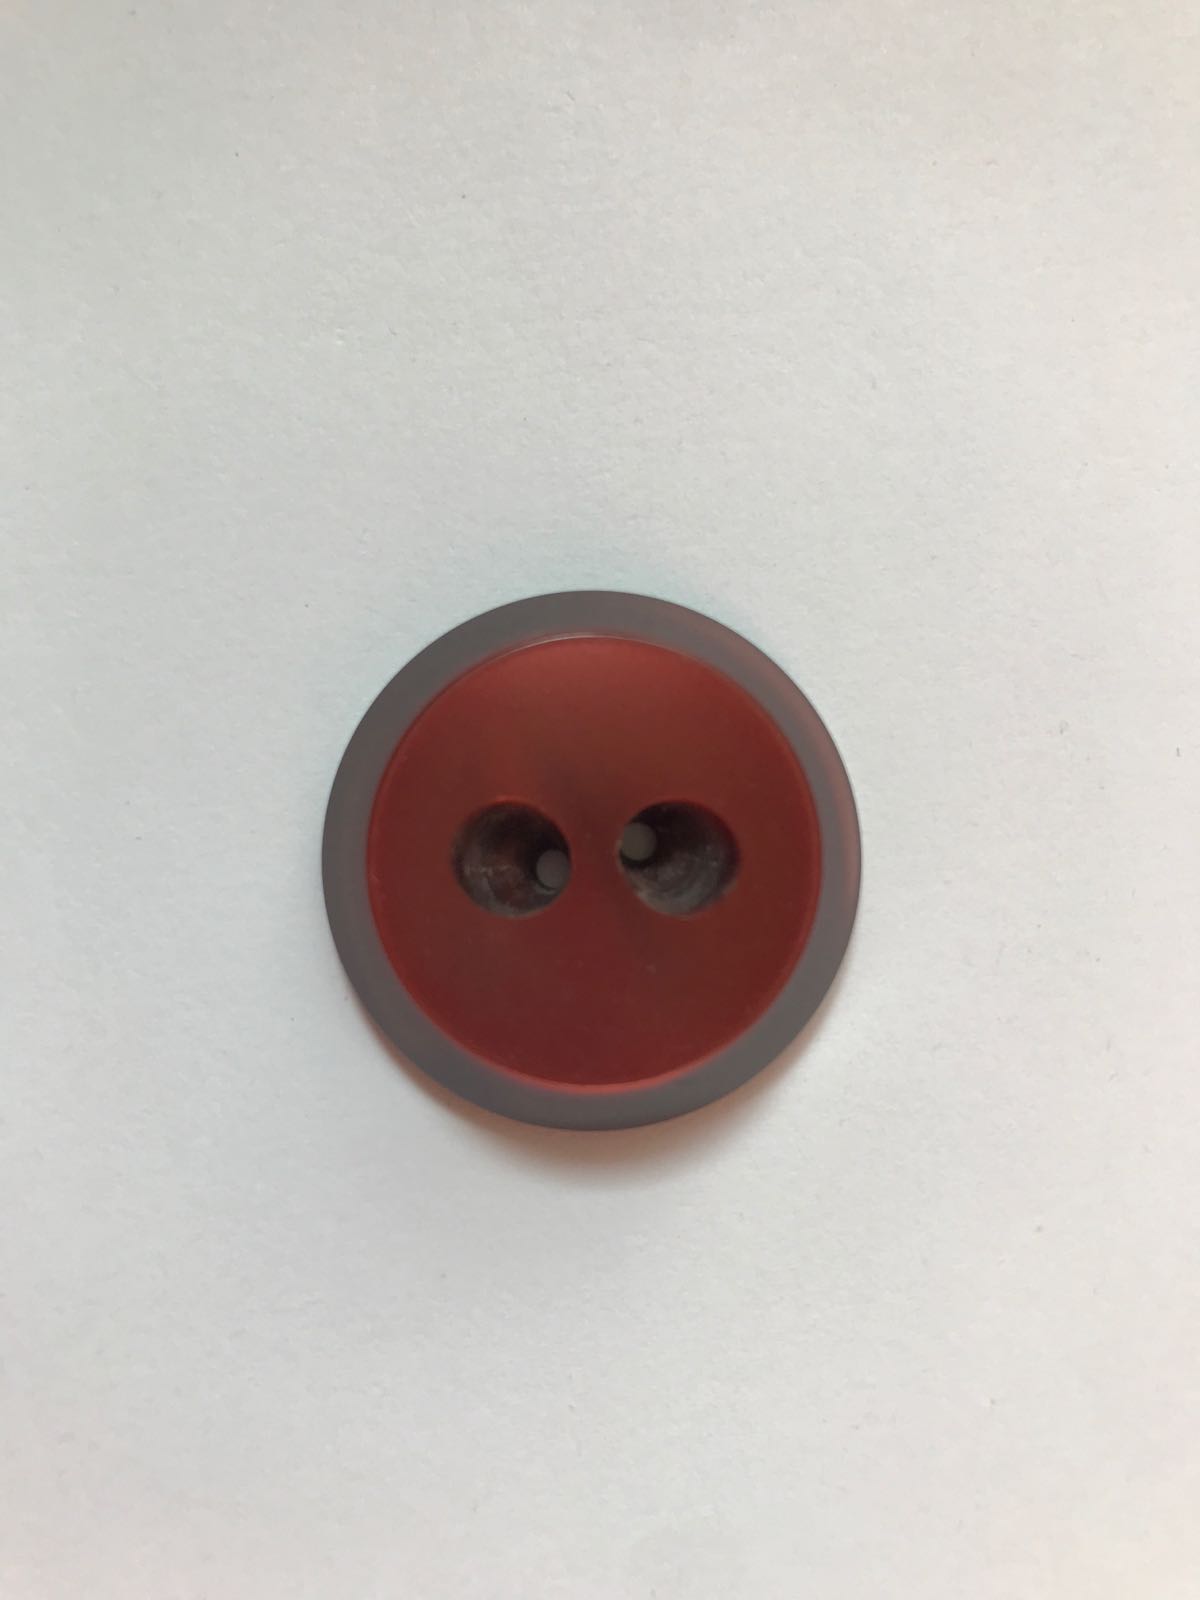 Vintage plastic button 30 mm